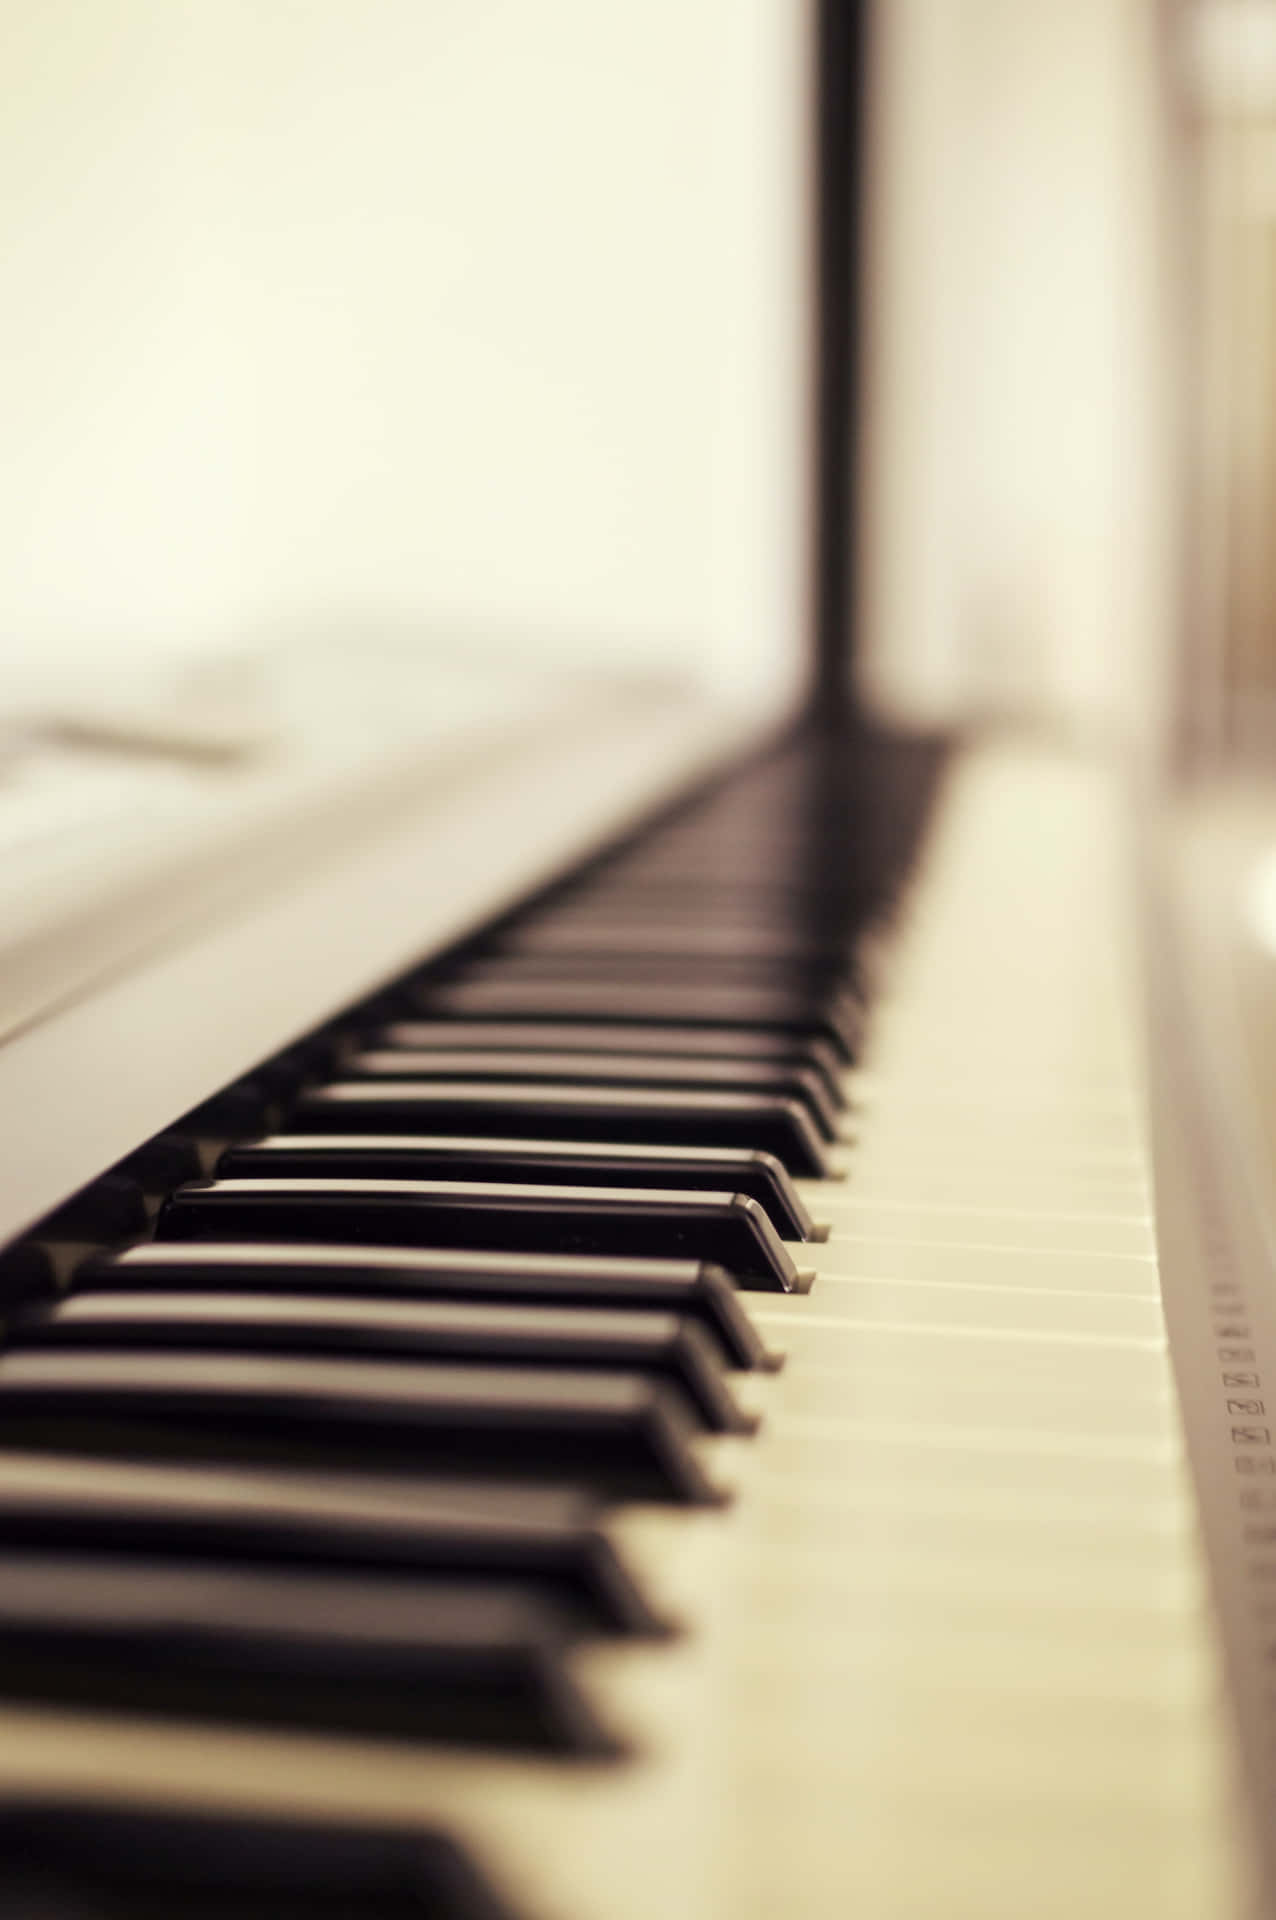 Imagenen Primer Plano De Un Teclado De Piano, Instrumento Musical.